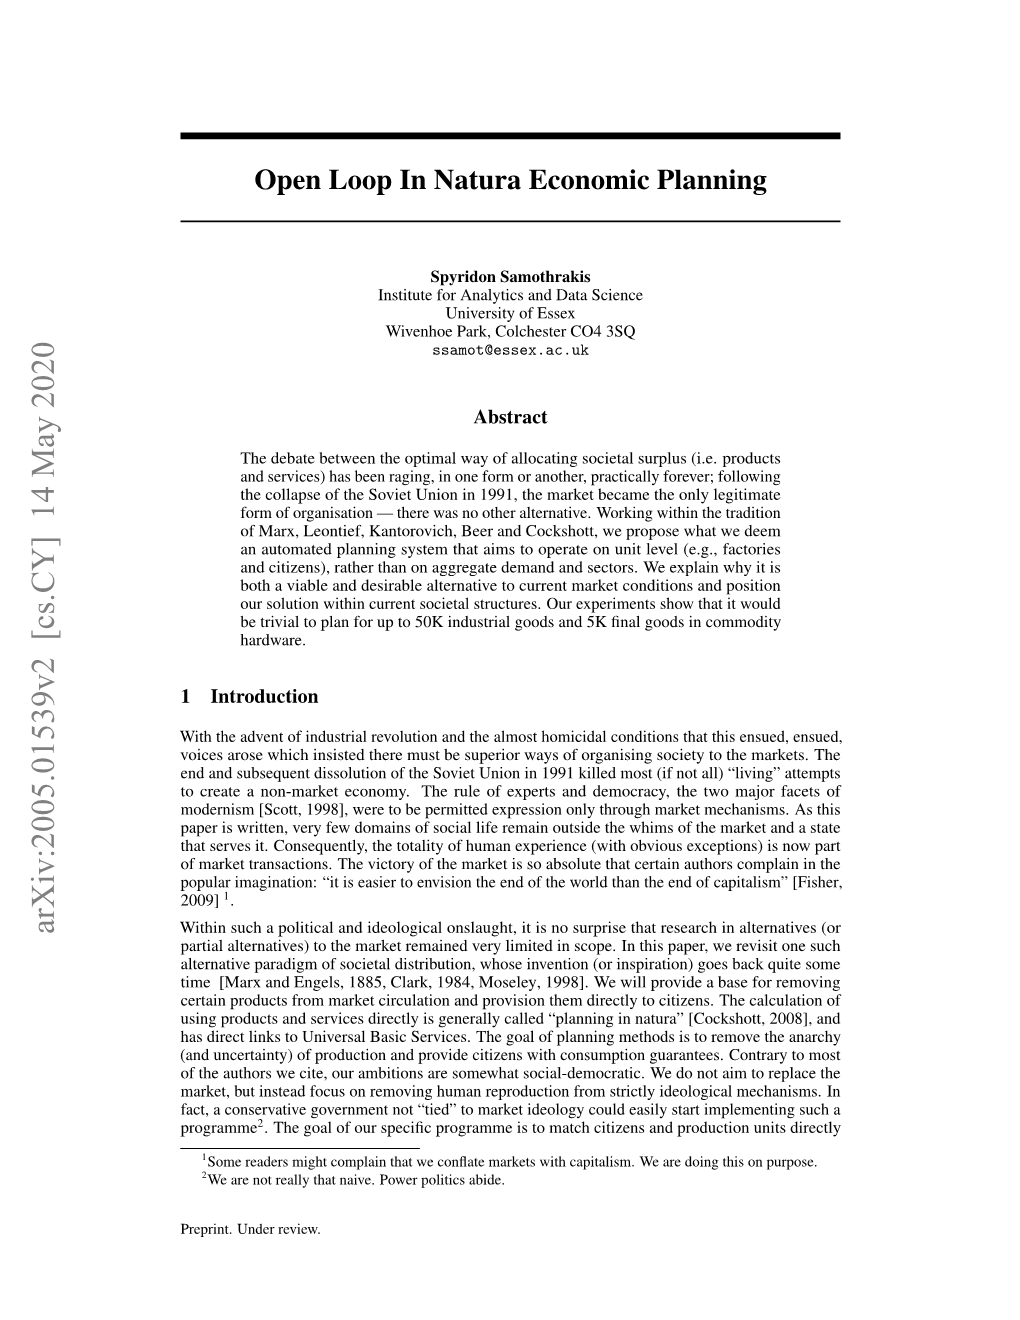 Open Loop in Natura Economic Planning